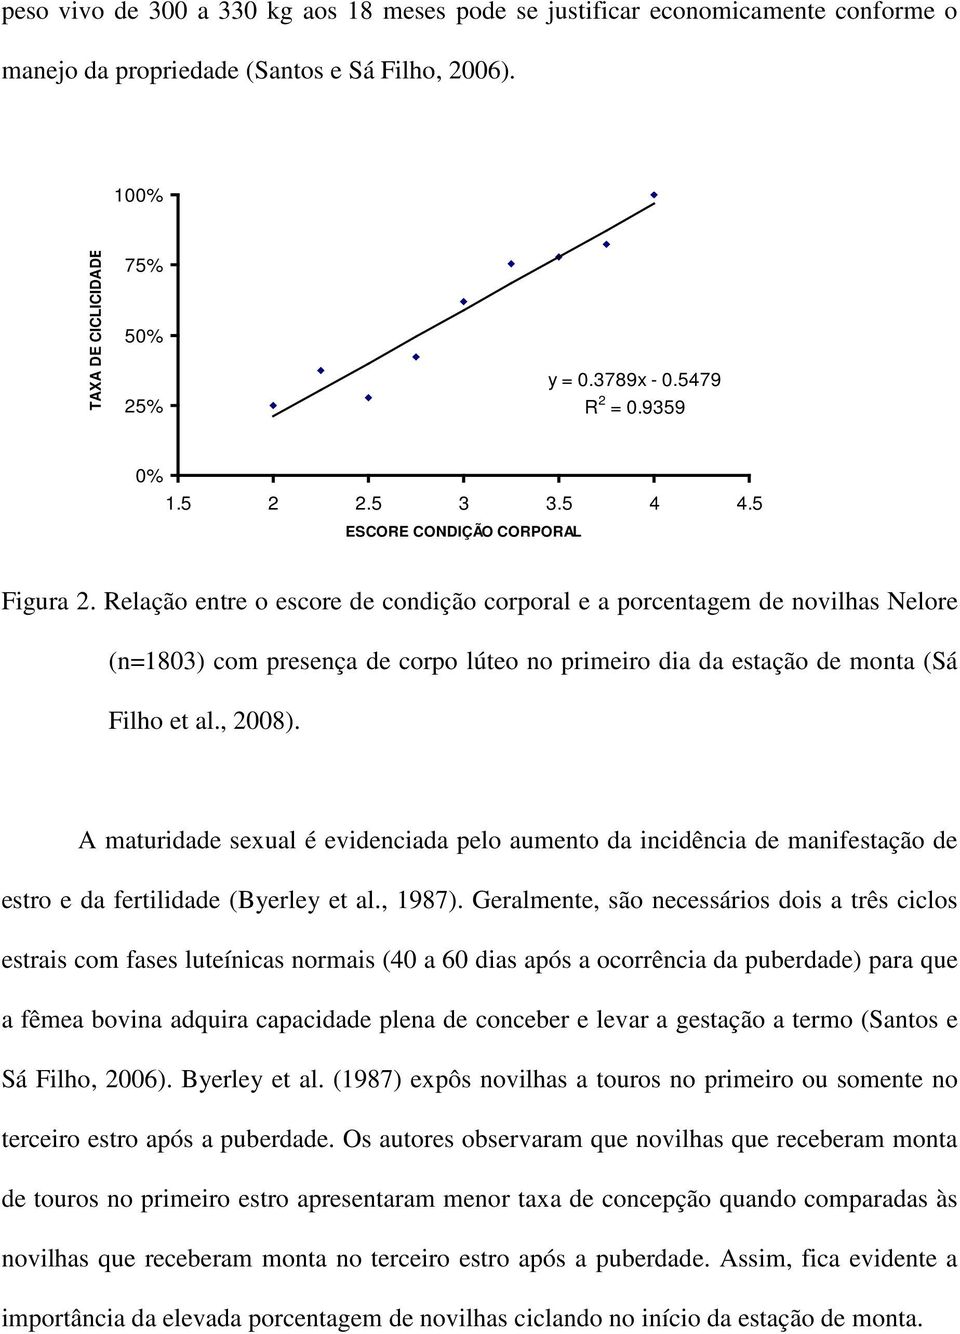 Relação entre o escore de condição corporal e a porcentagem de novilhas Nelore (n=1803) com presença de corpo lúteo no primeiro dia da estação de monta (Sá Filho et al., 2008).